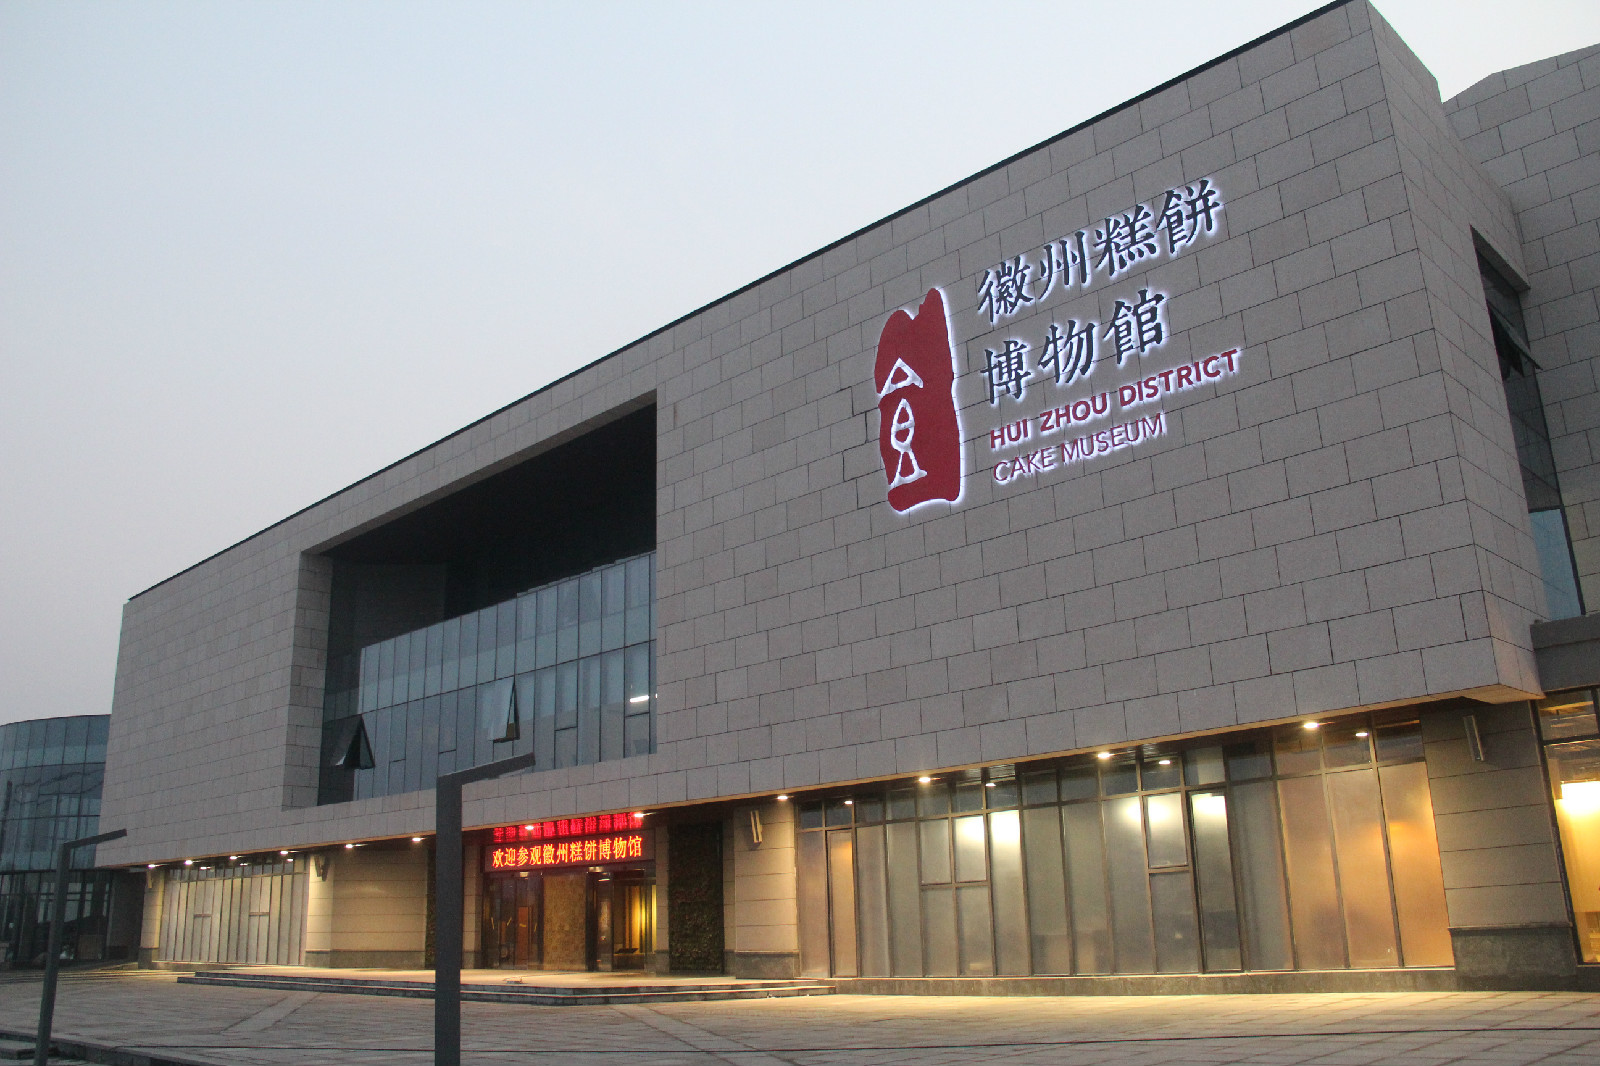 2022郭元益糕饼博物馆美食餐厅,郭元益是台湾一家著名的糕饼... 【去哪儿攻略】